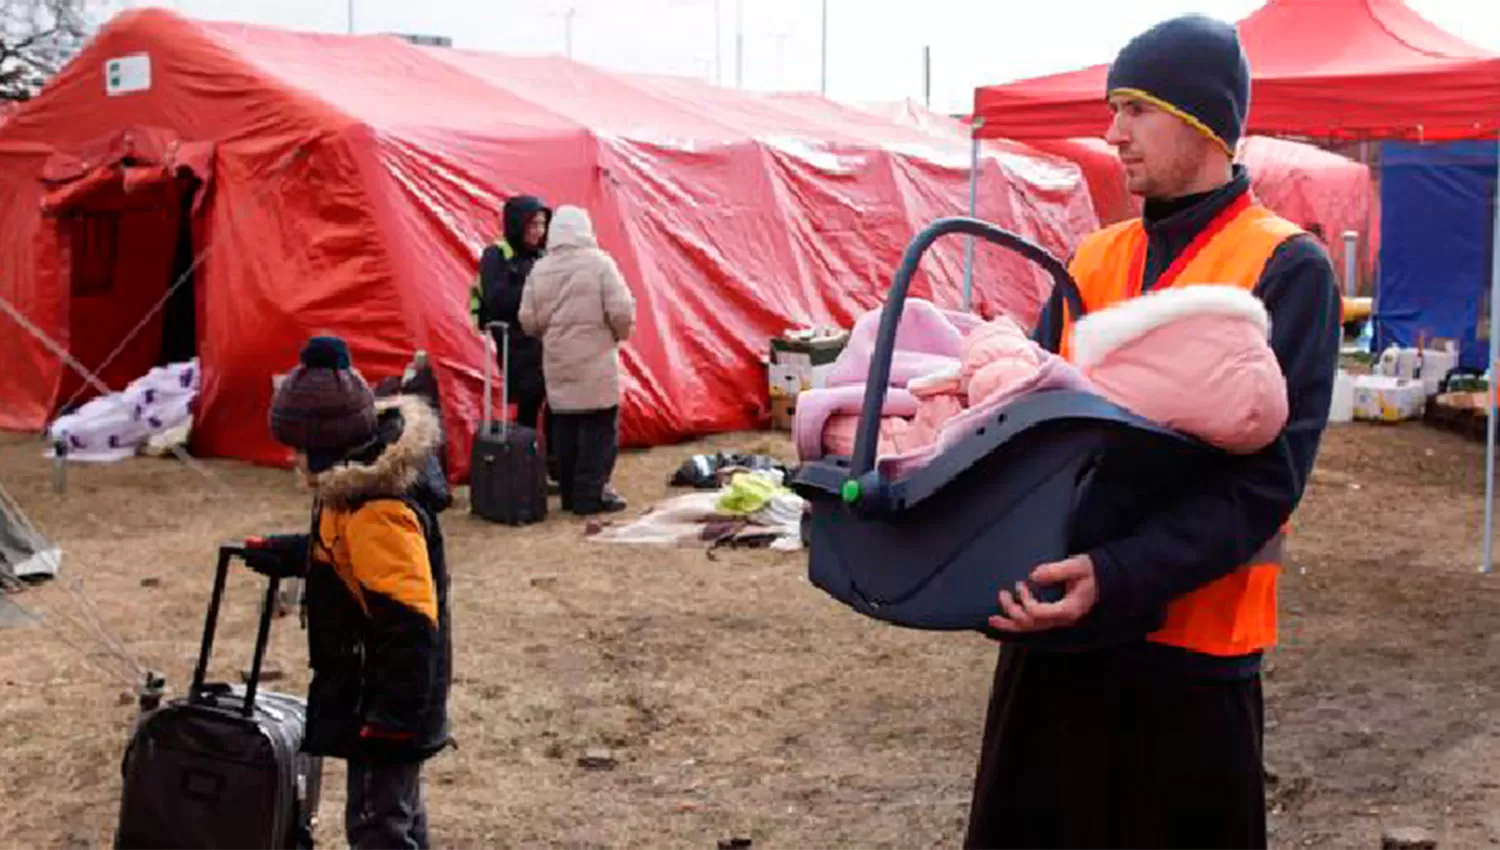 EN ESLOVAQUIA. Una familia ucraniana espera asistencia en un centro de refugiados en Vysne Nemecke.